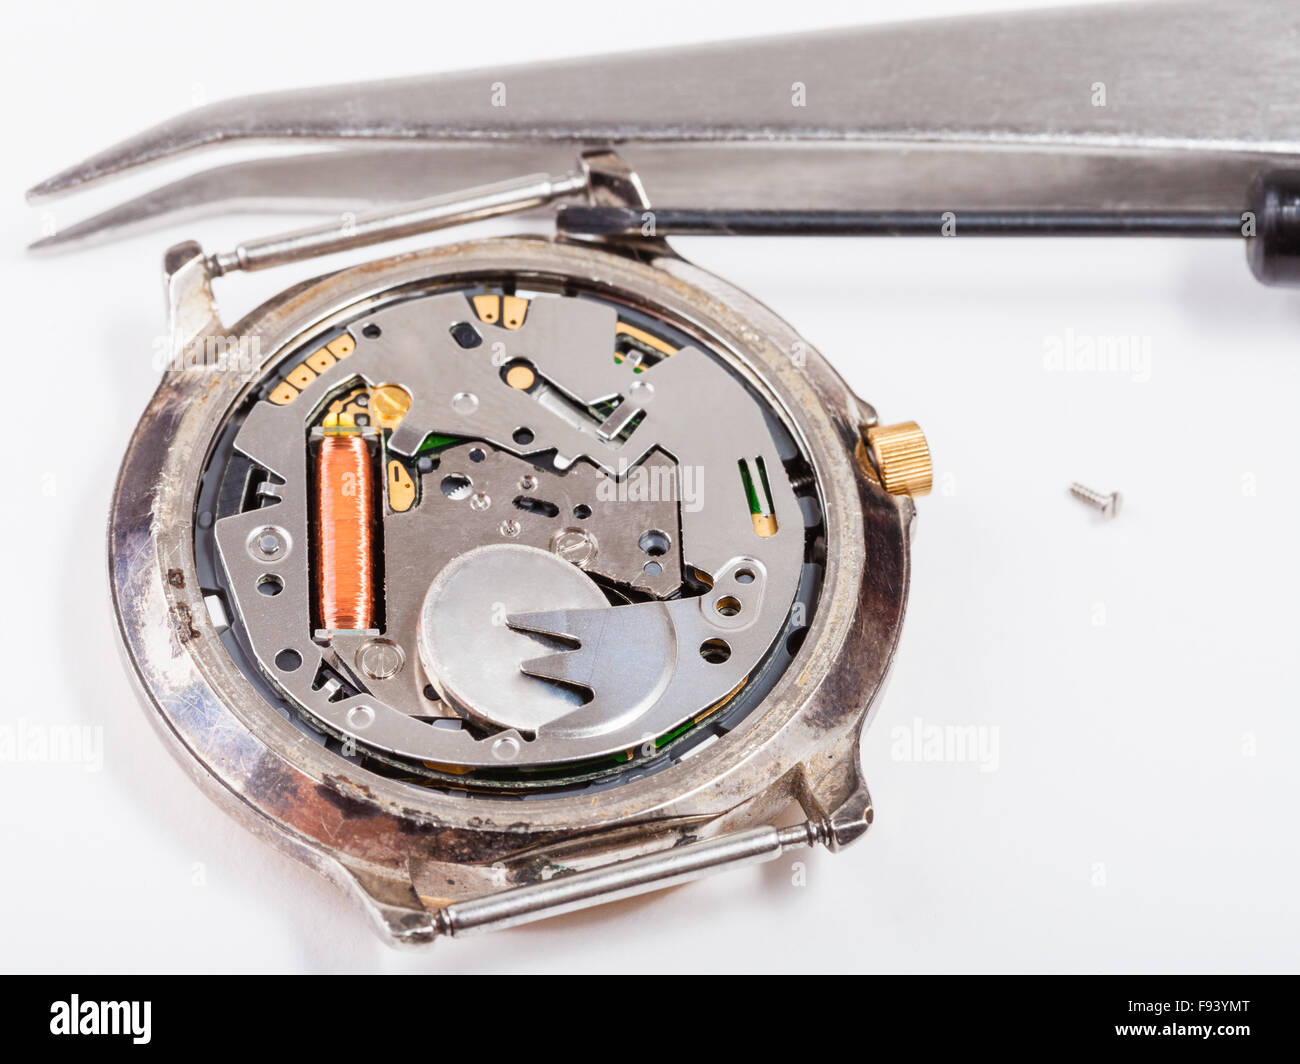 Reparatur von Watch - Tools und ersetzen Batterie in Quarz-Uhr schließen  sich Stockfotografie - Alamy